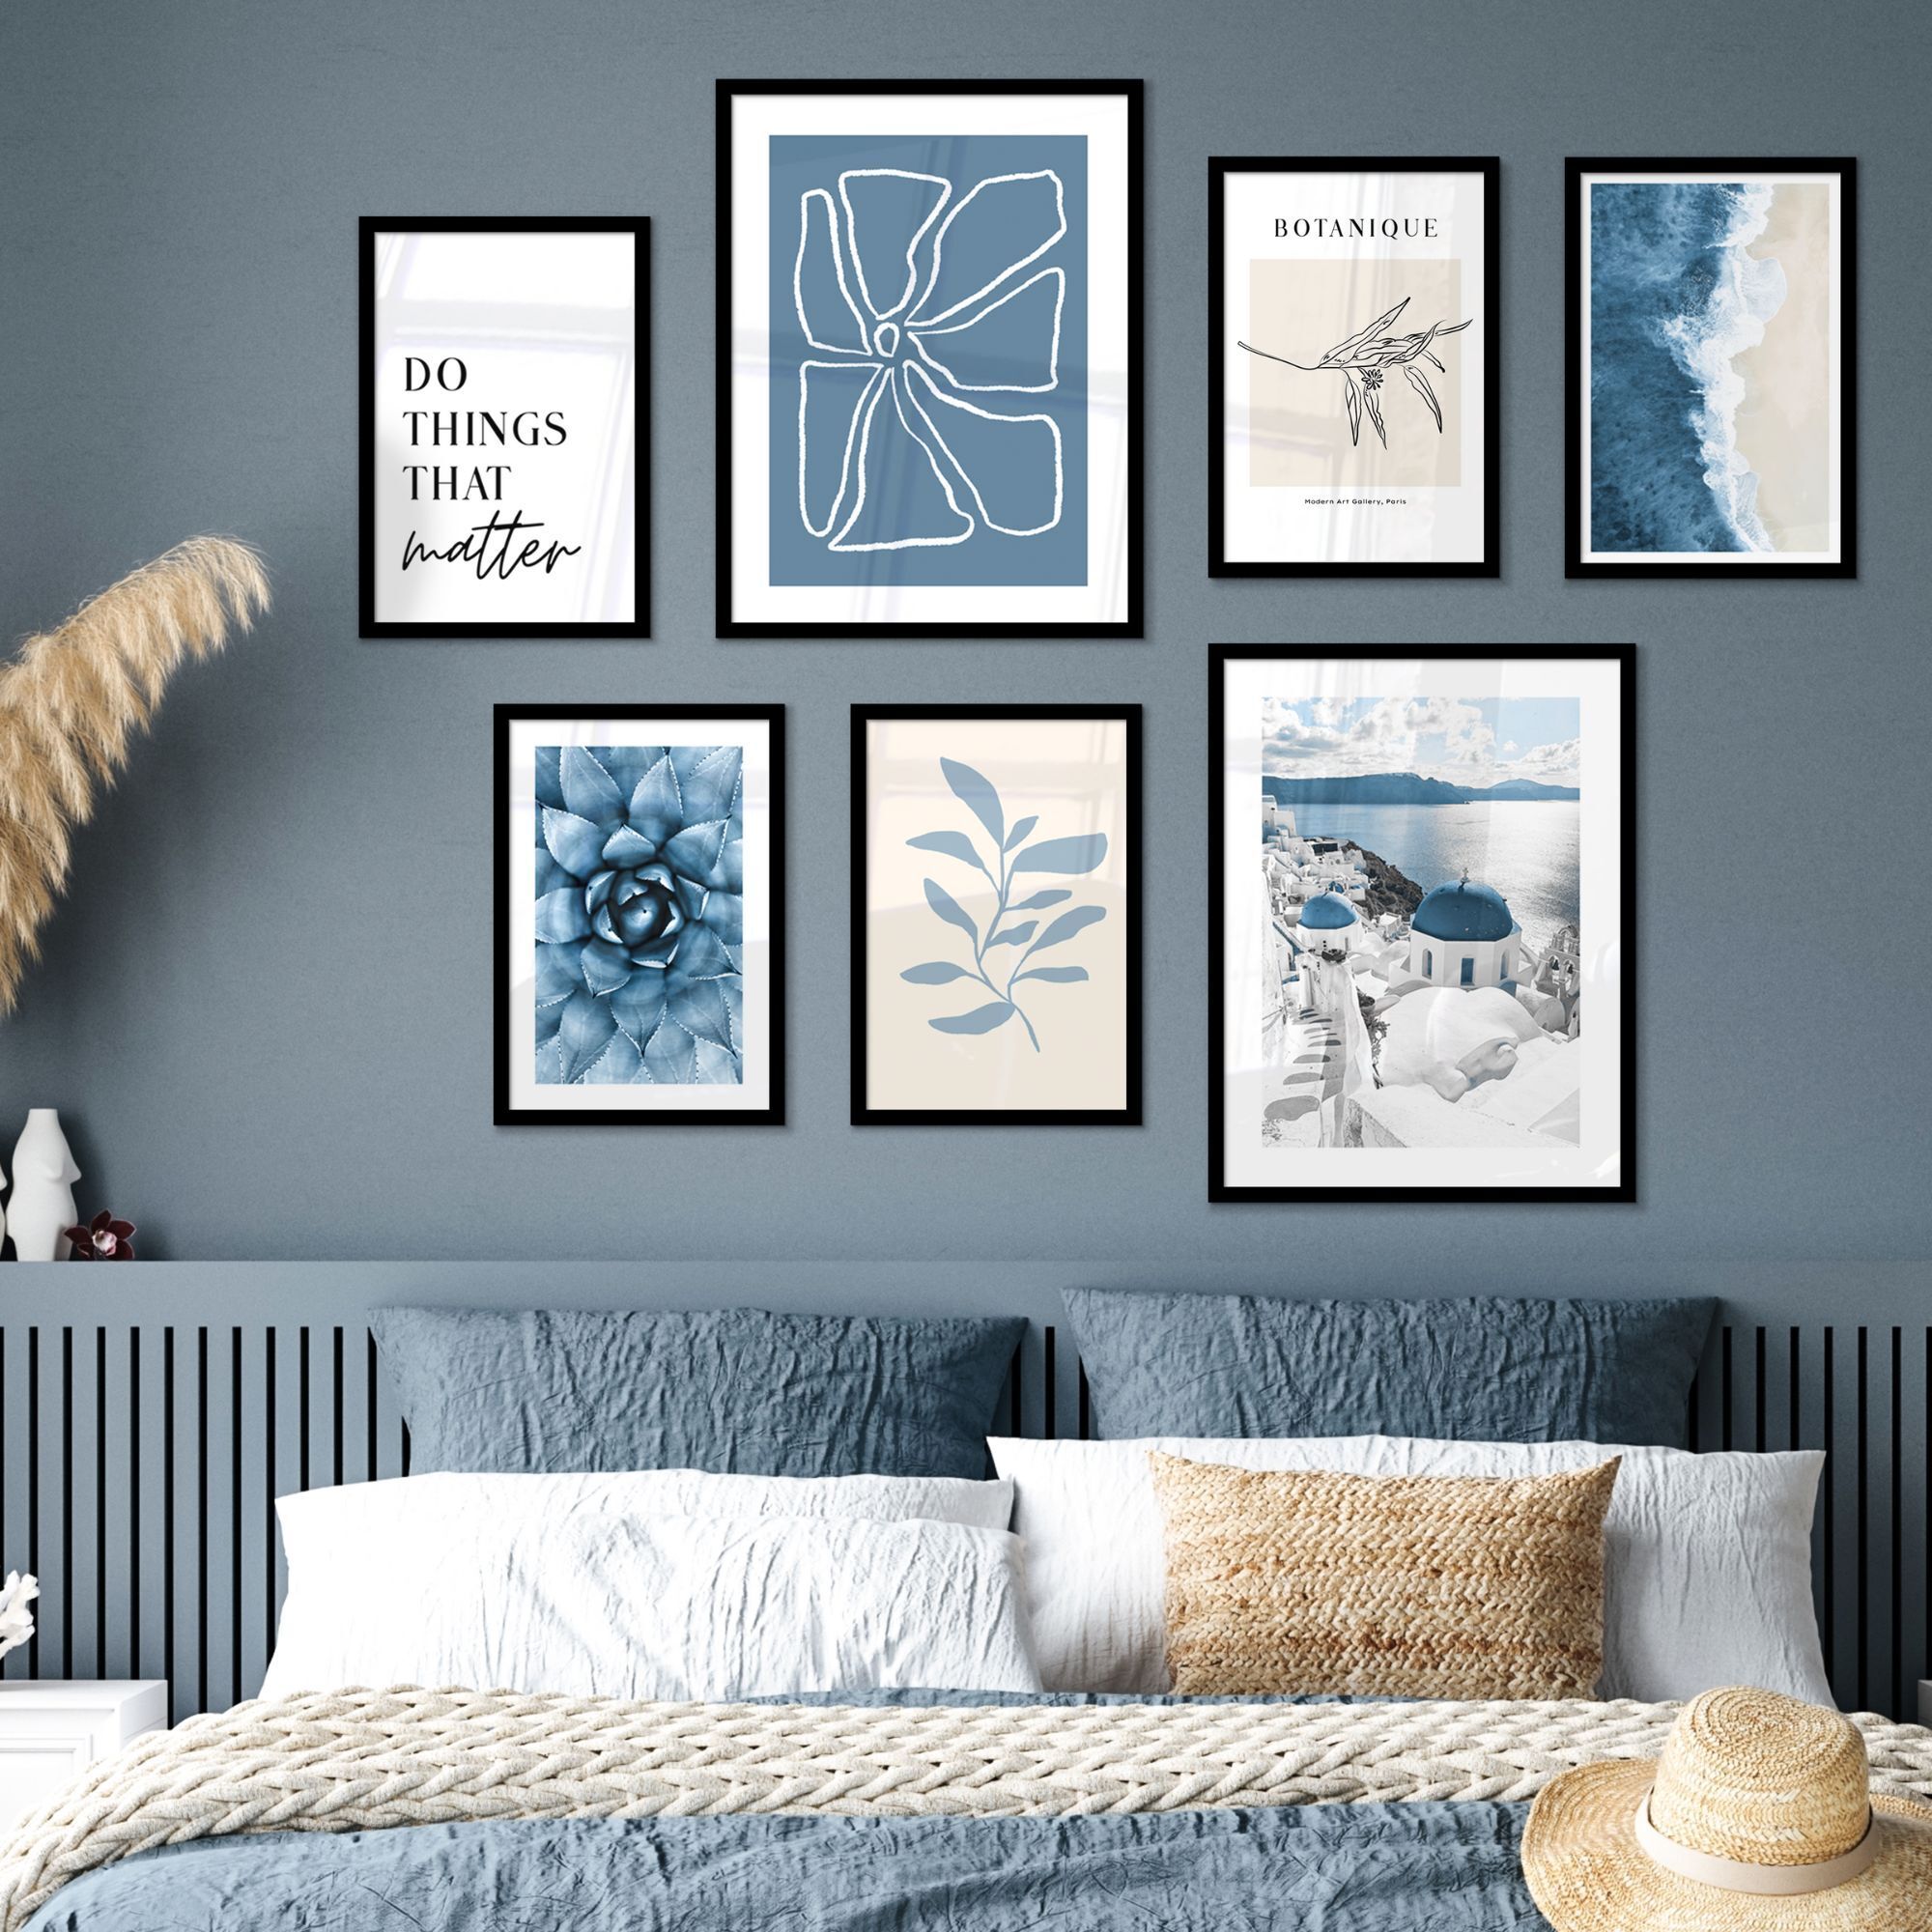 Fotowand shades of grey aan een muur boven een blauw bed